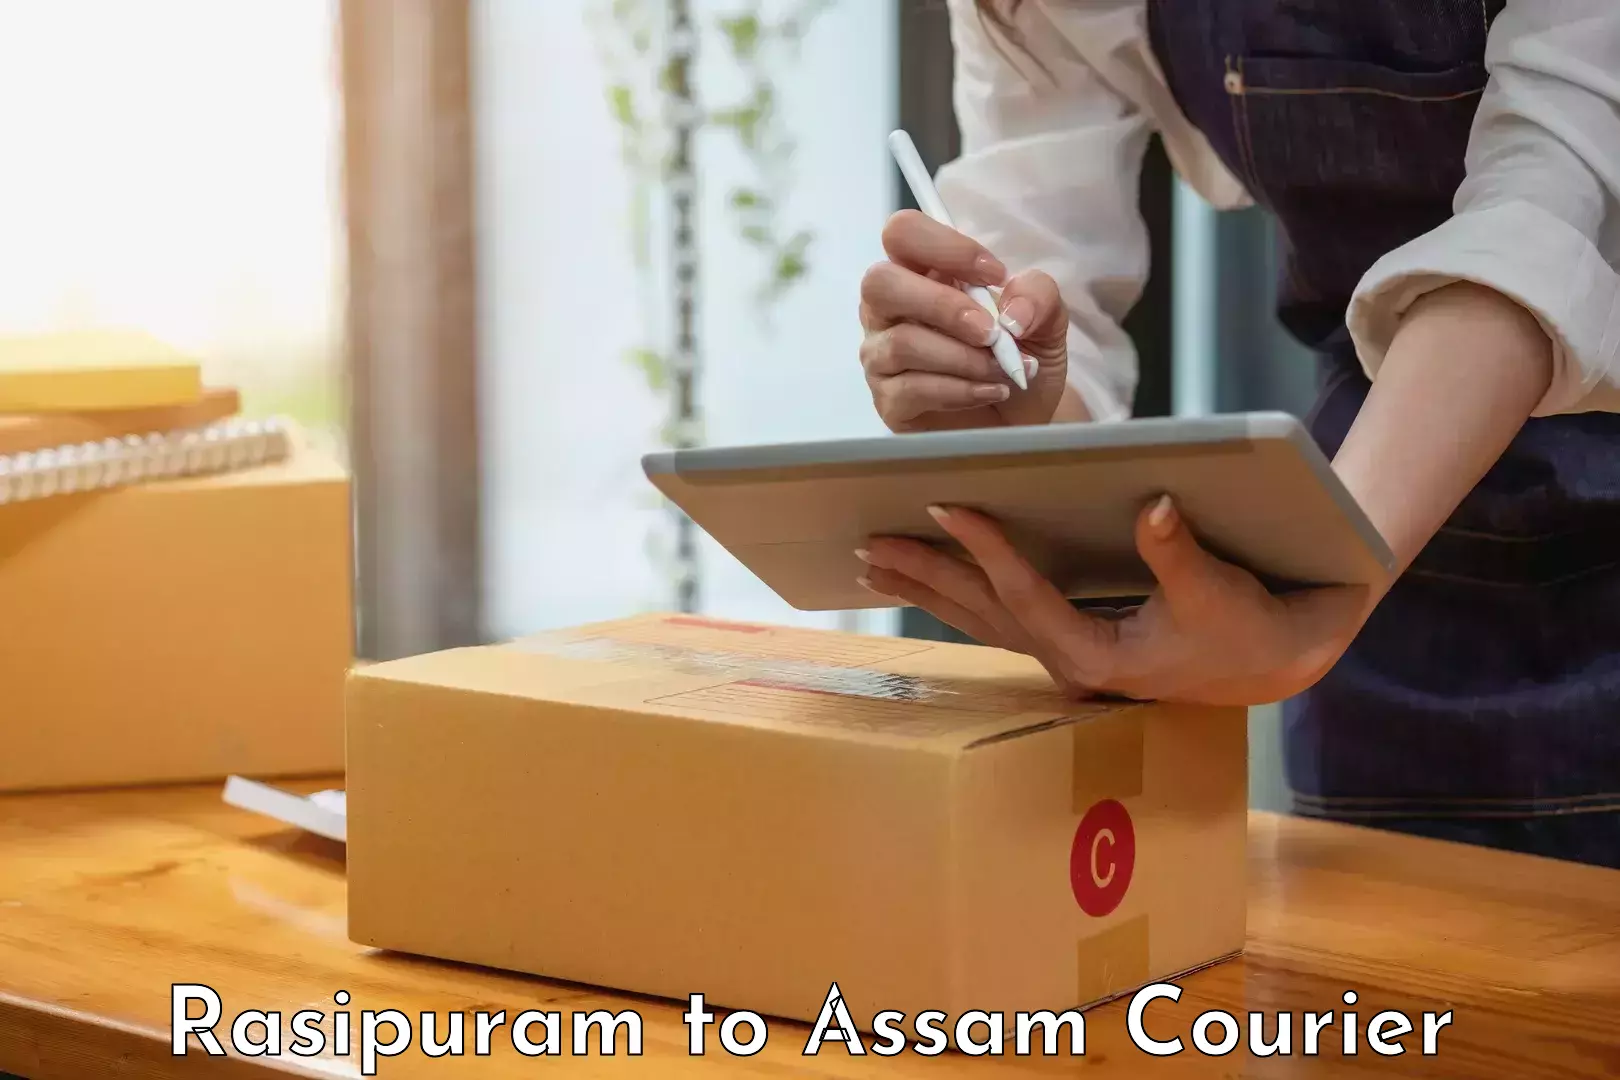 Customer-focused courier Rasipuram to Golakganj